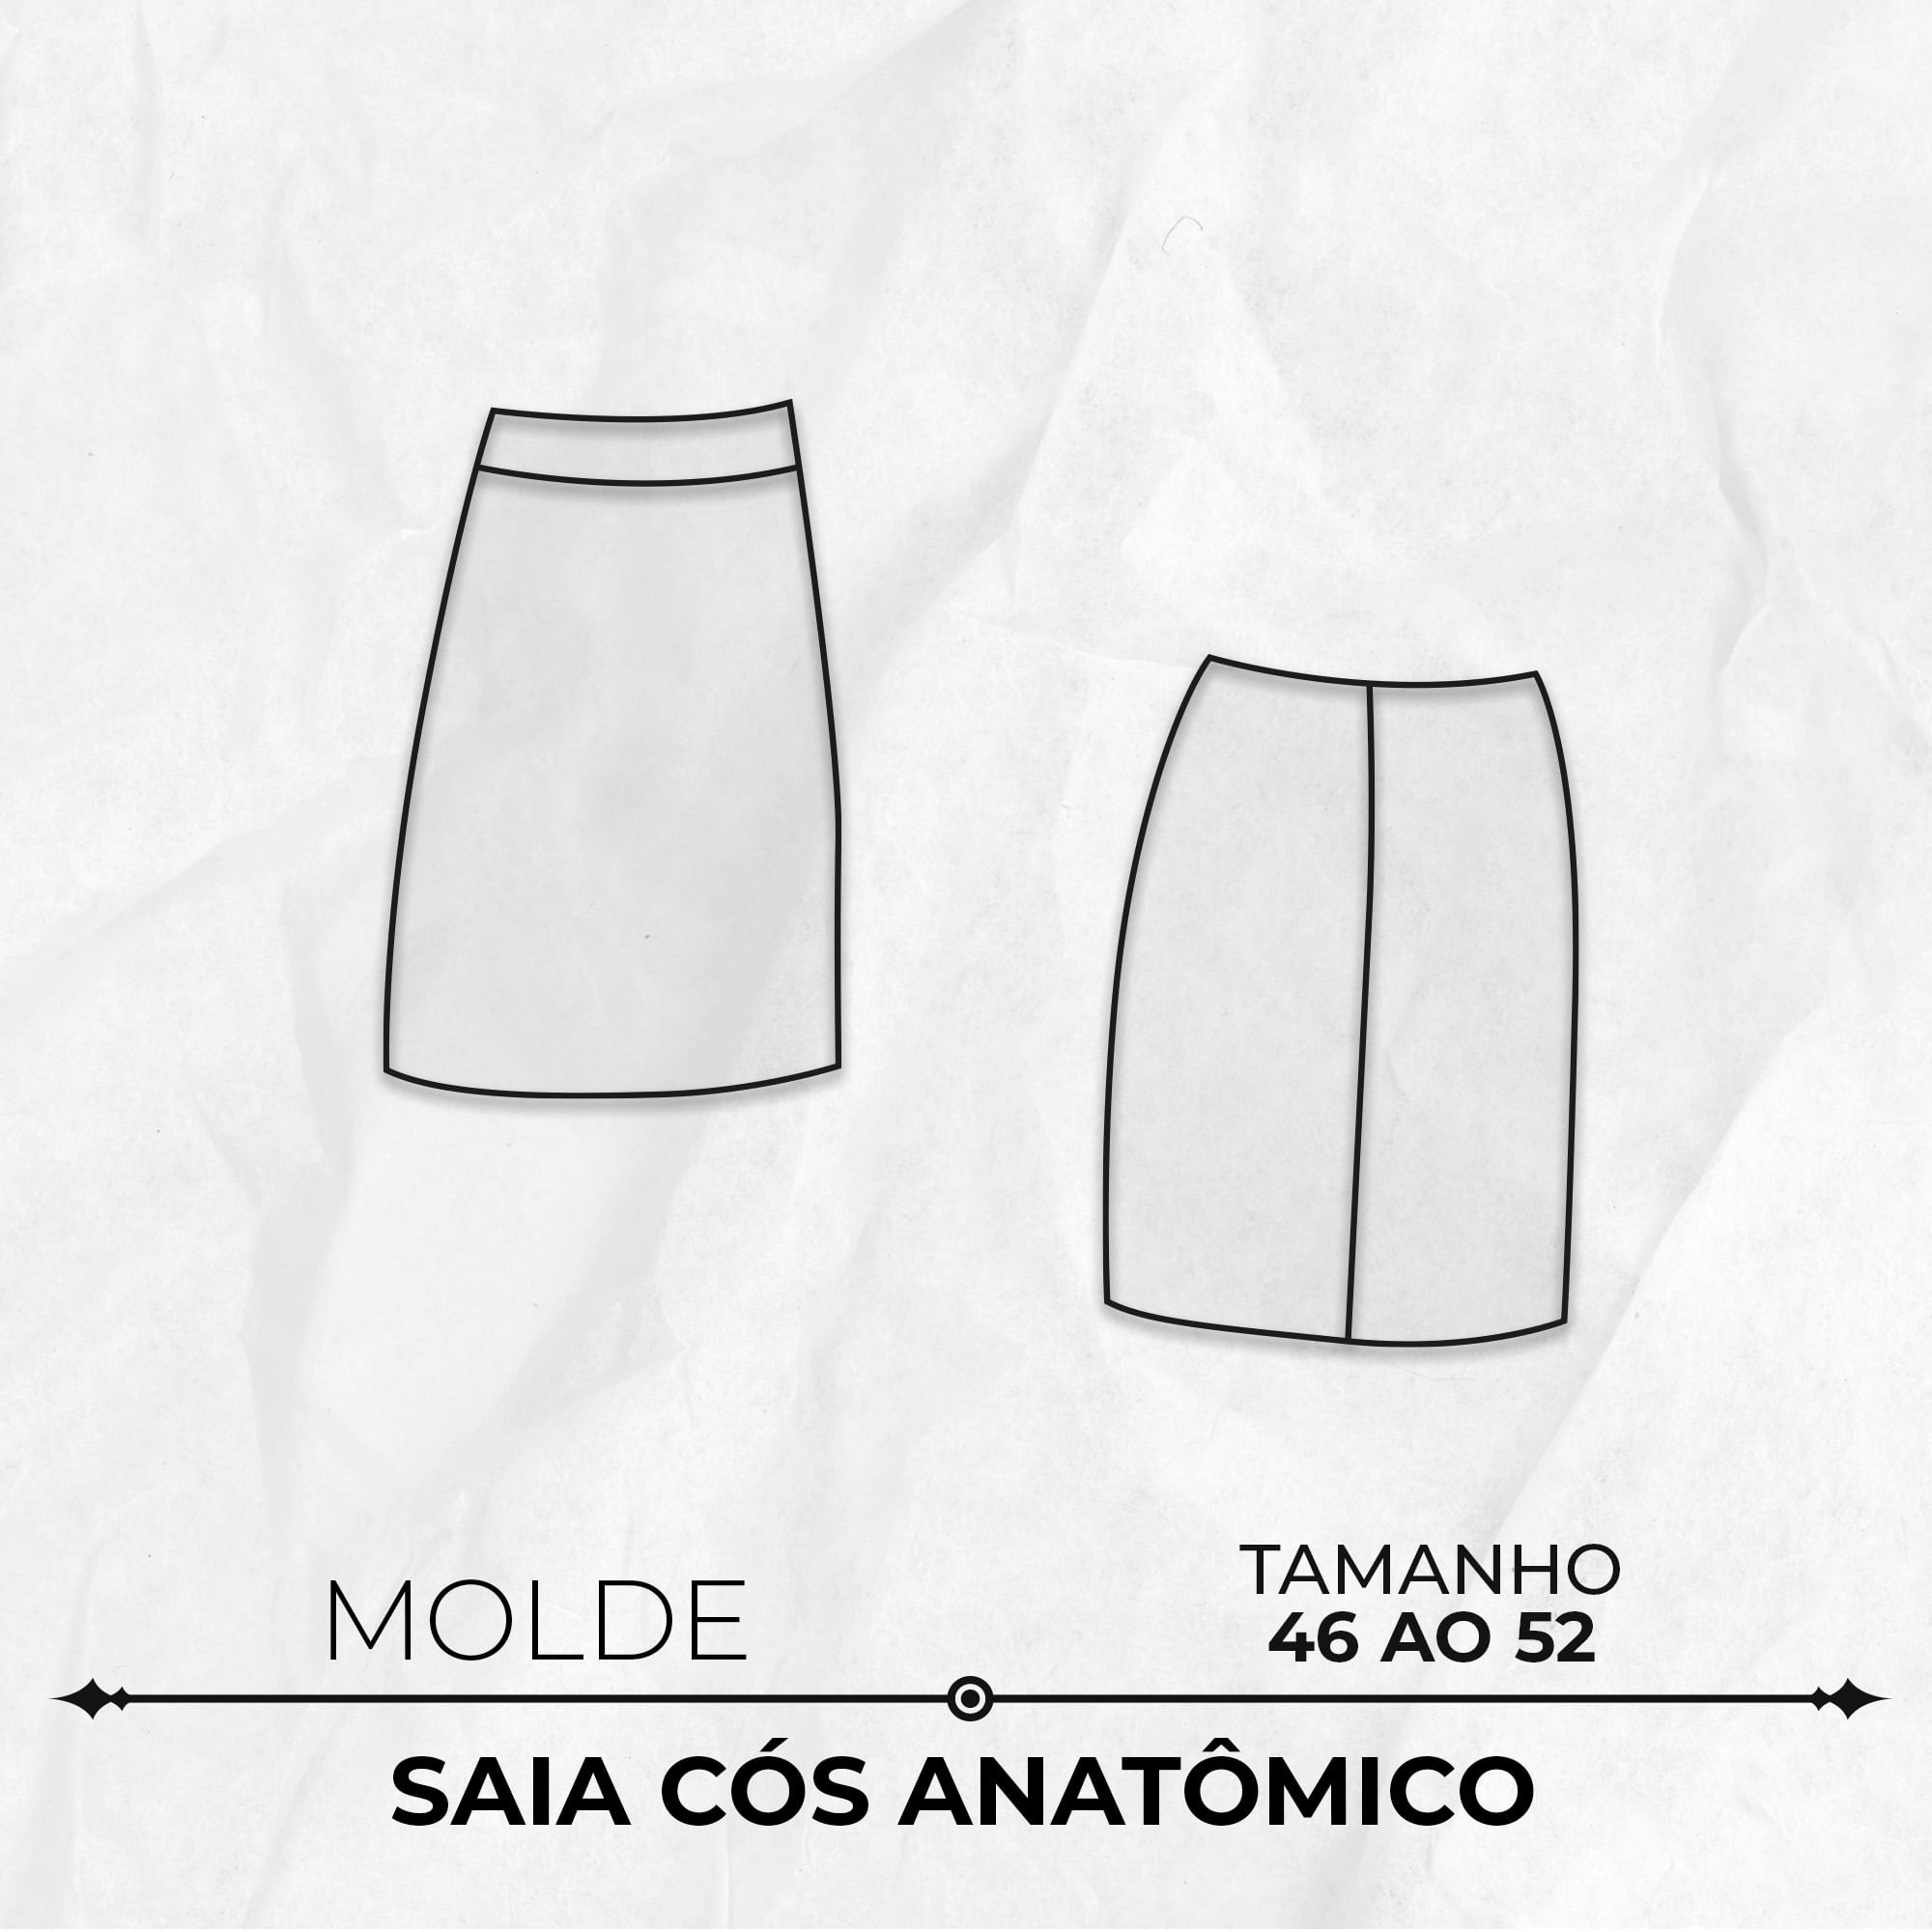 Molde de saia cós anatômico tamanho 46 ao 52 by Marlene Mukai